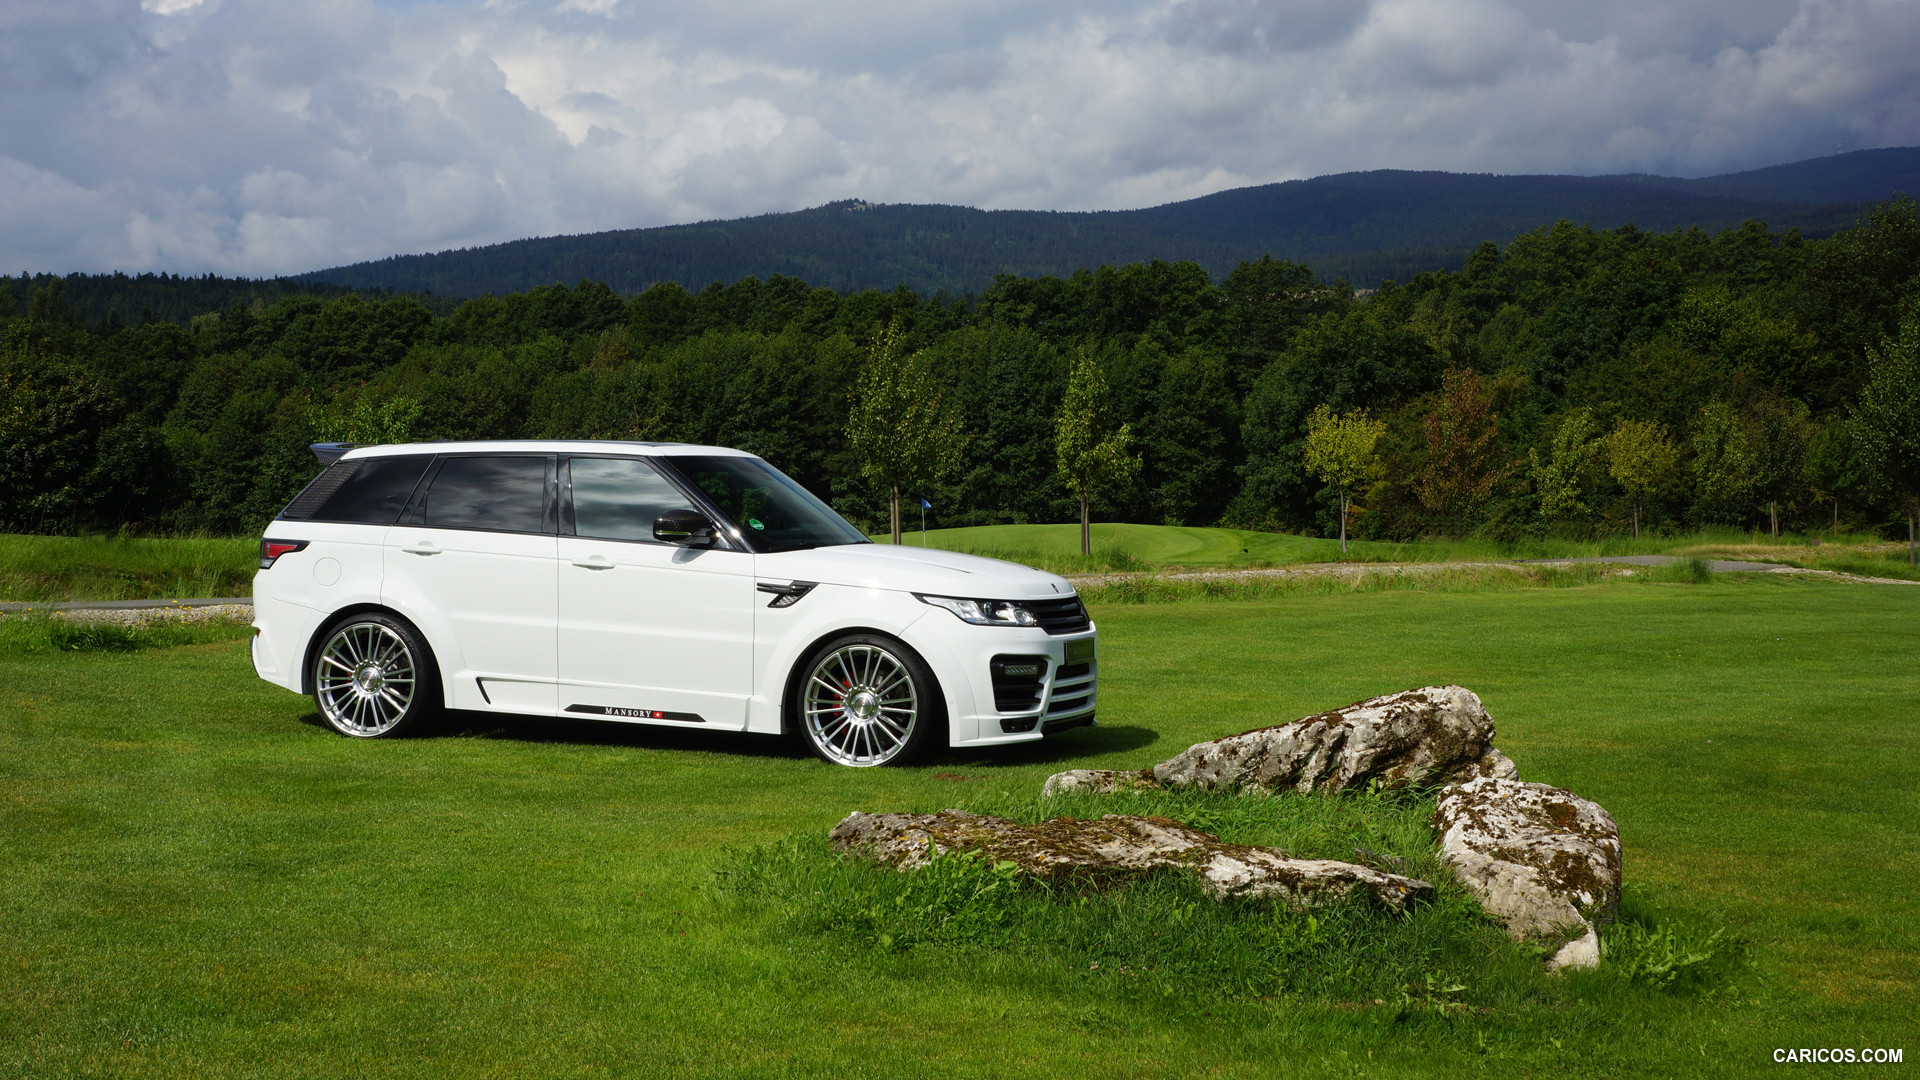 2015 Mansory Range Rover Sport (White) - Side, #4 of 19